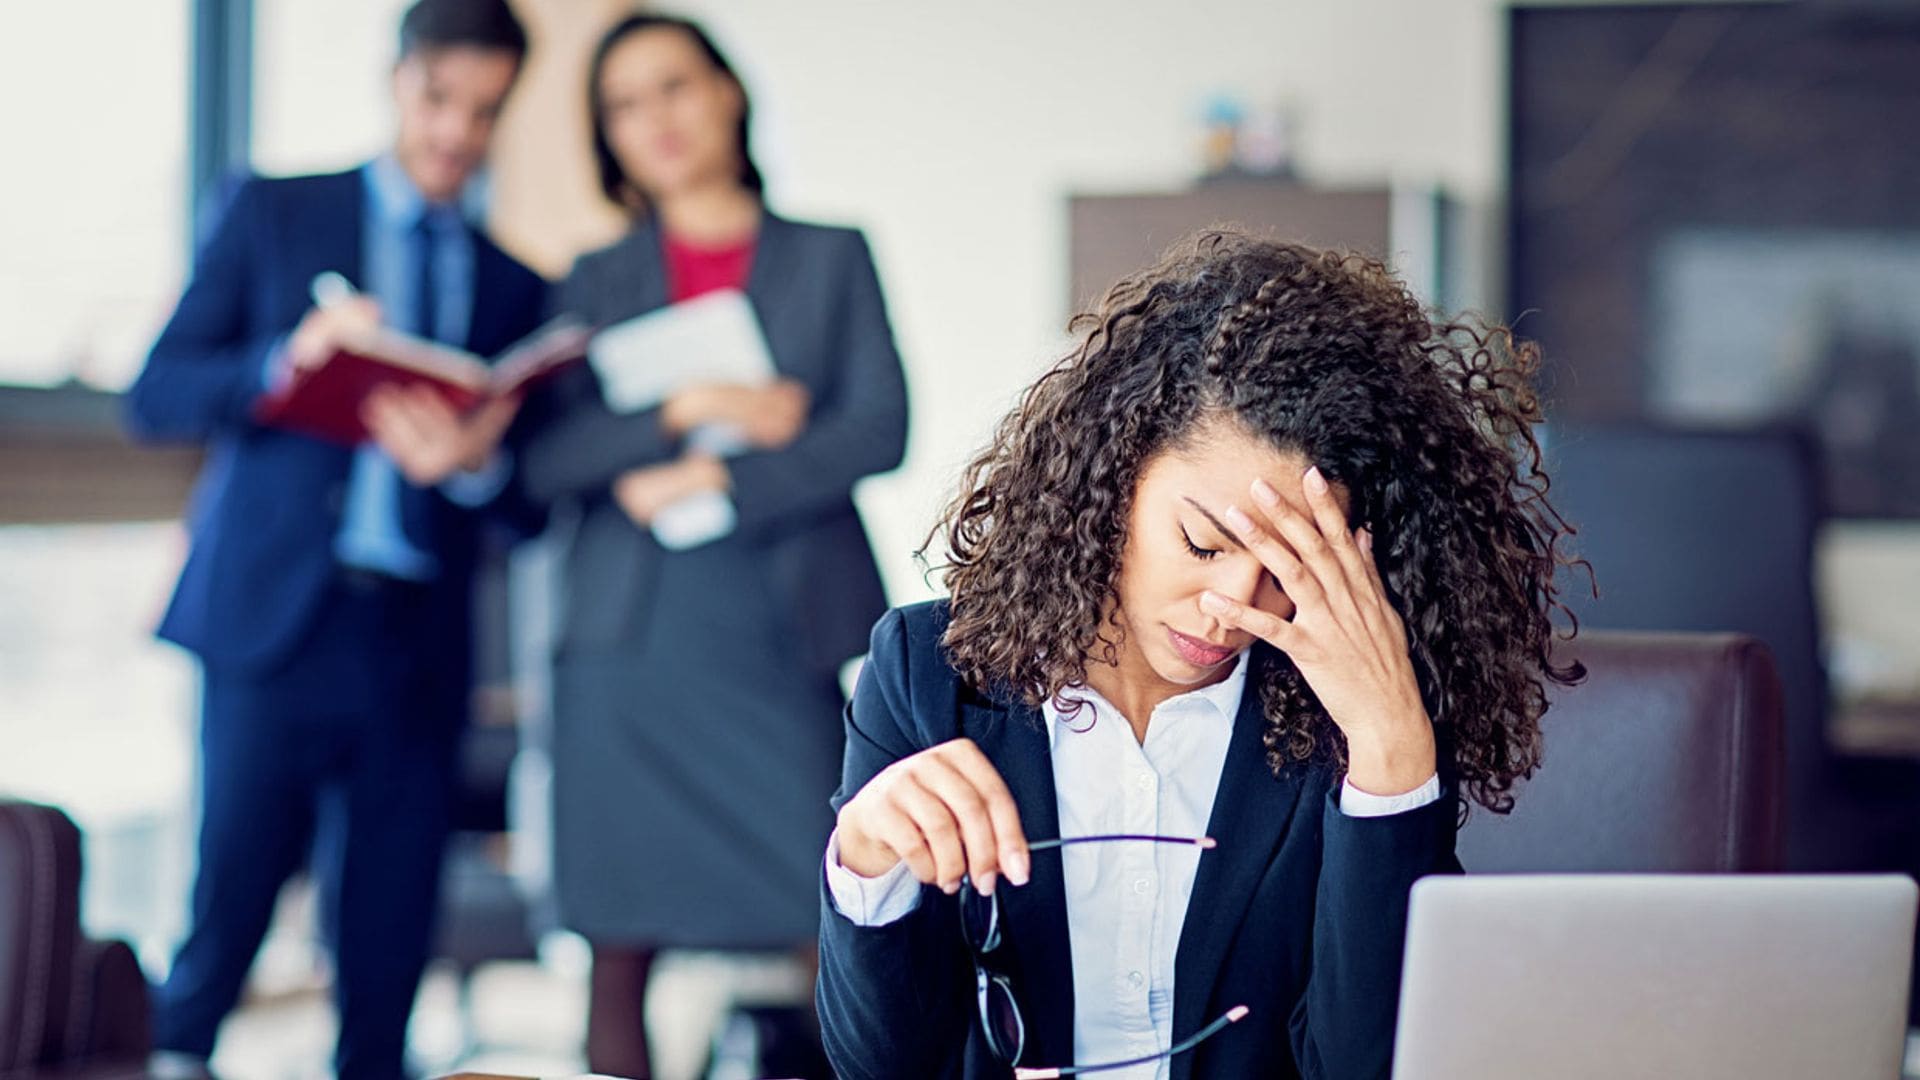 5 señales que pueden indicar que estás sufriendo 'mobbing' en el trabajo